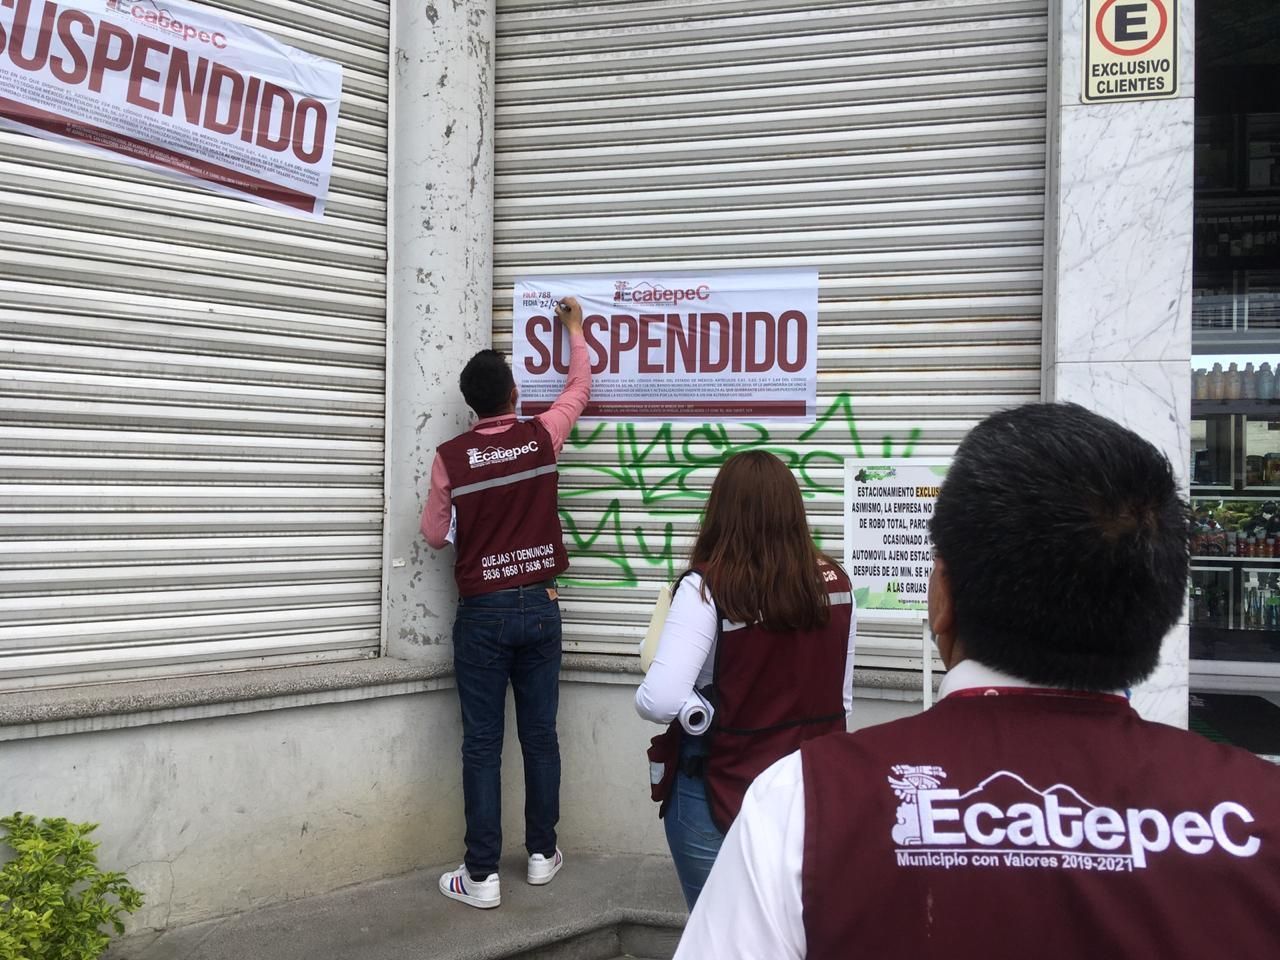 



"Suspenden vinaterías y bares en Ecatepec por no respetar medidas sanitarias por Covid-19"

